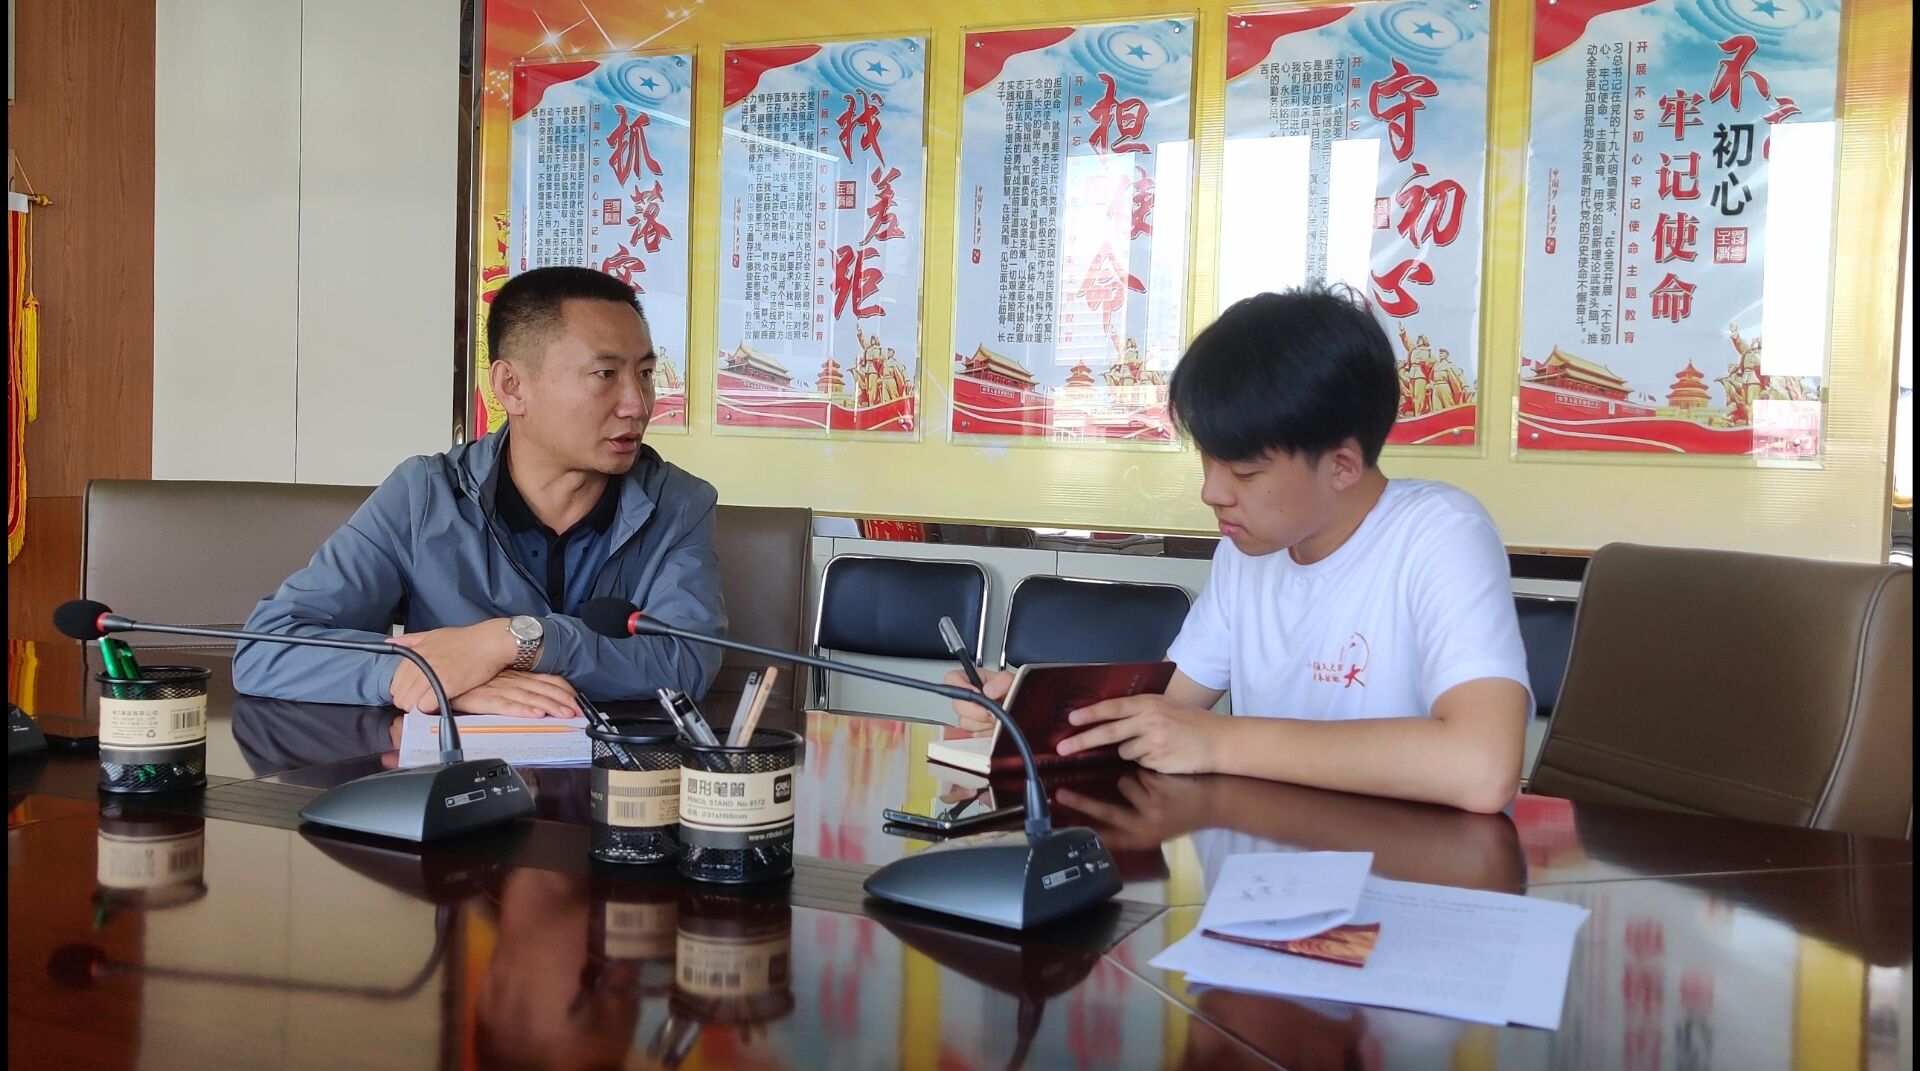 找到抗击疫情期间做出巨大贡献的党员同志杨晓波进行采访